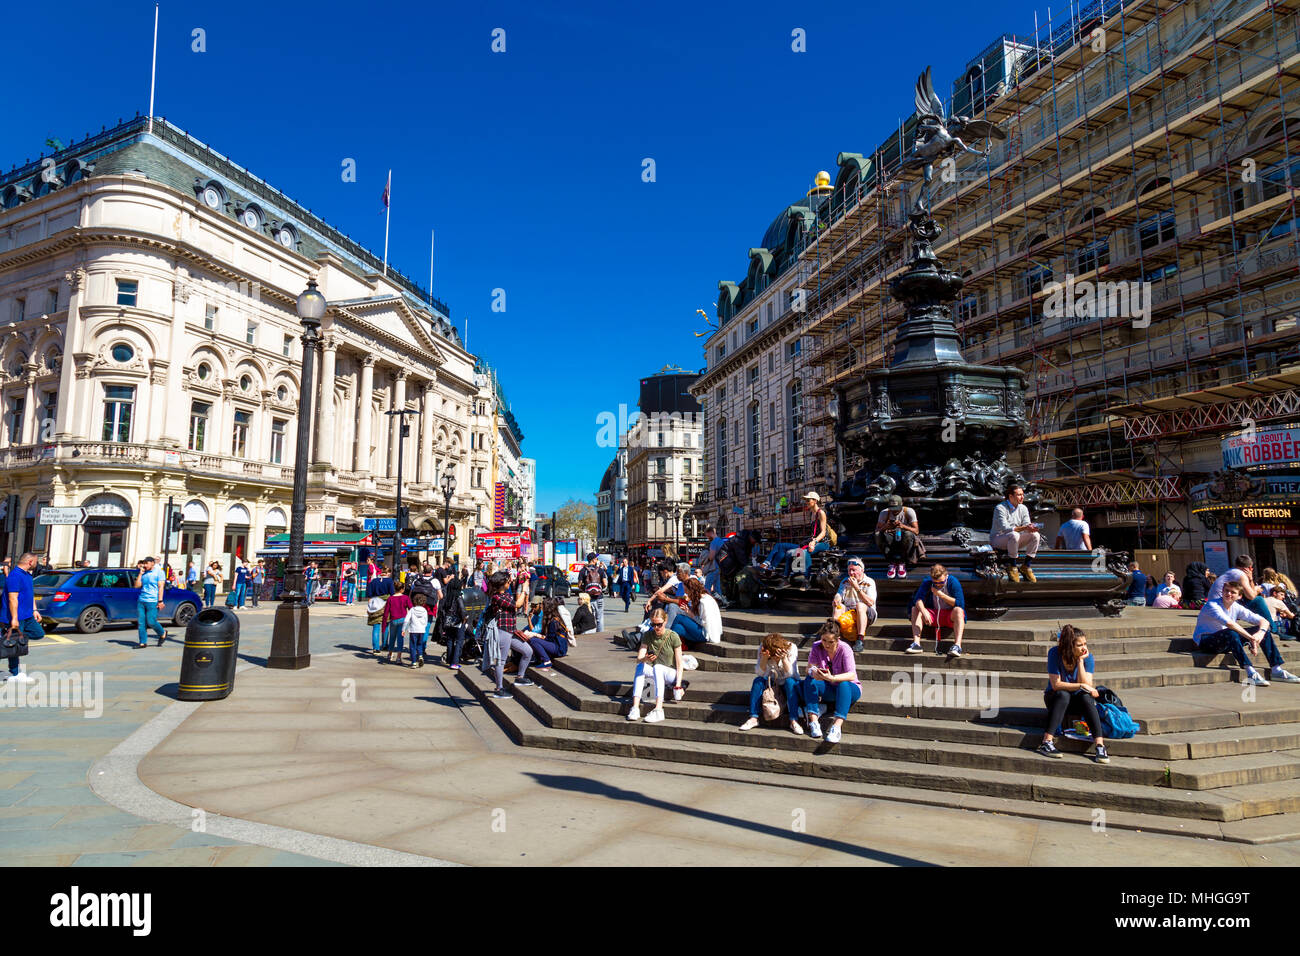 Occupato Piccadilly Circus con turisti che si siedono sui gradini di Shaftesbury Memorial Fountain, London, Regno Unito Foto Stock